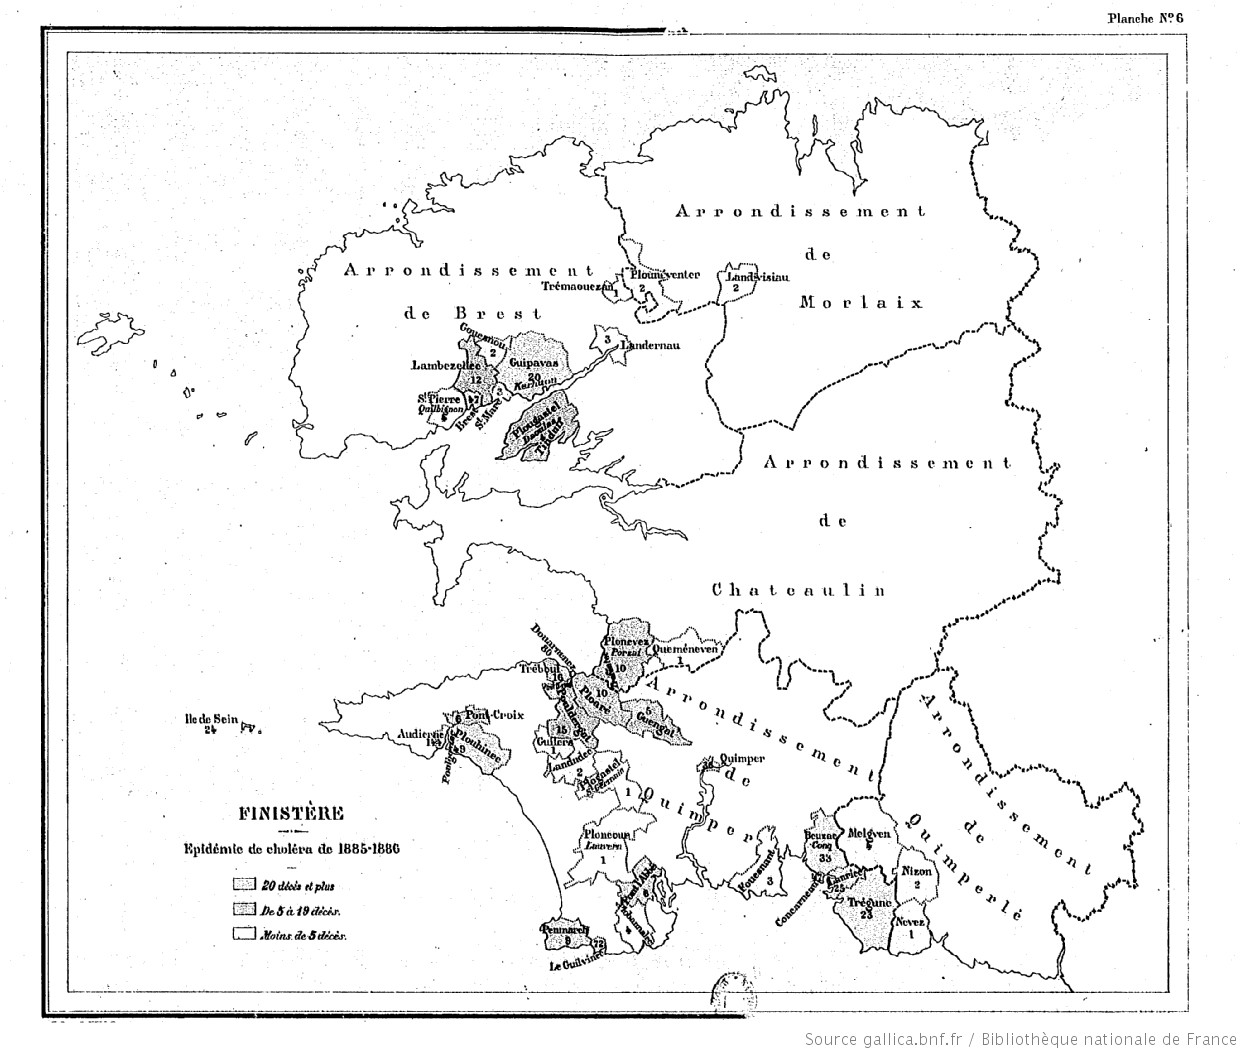 Carte du Finistère et zones touchées par le choléra en 1885 et 1886